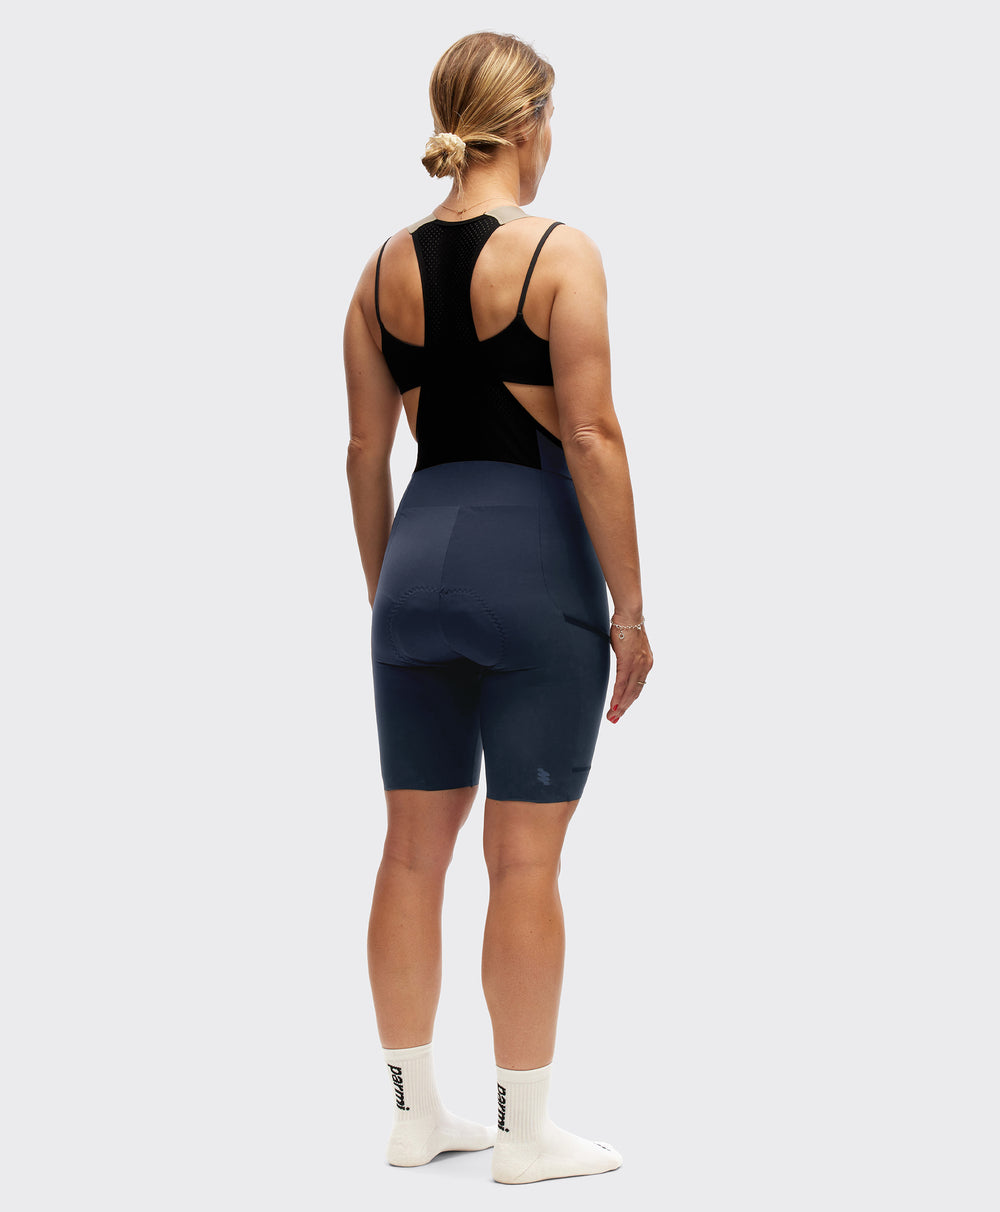 Women's All-Trail Bib Shorts